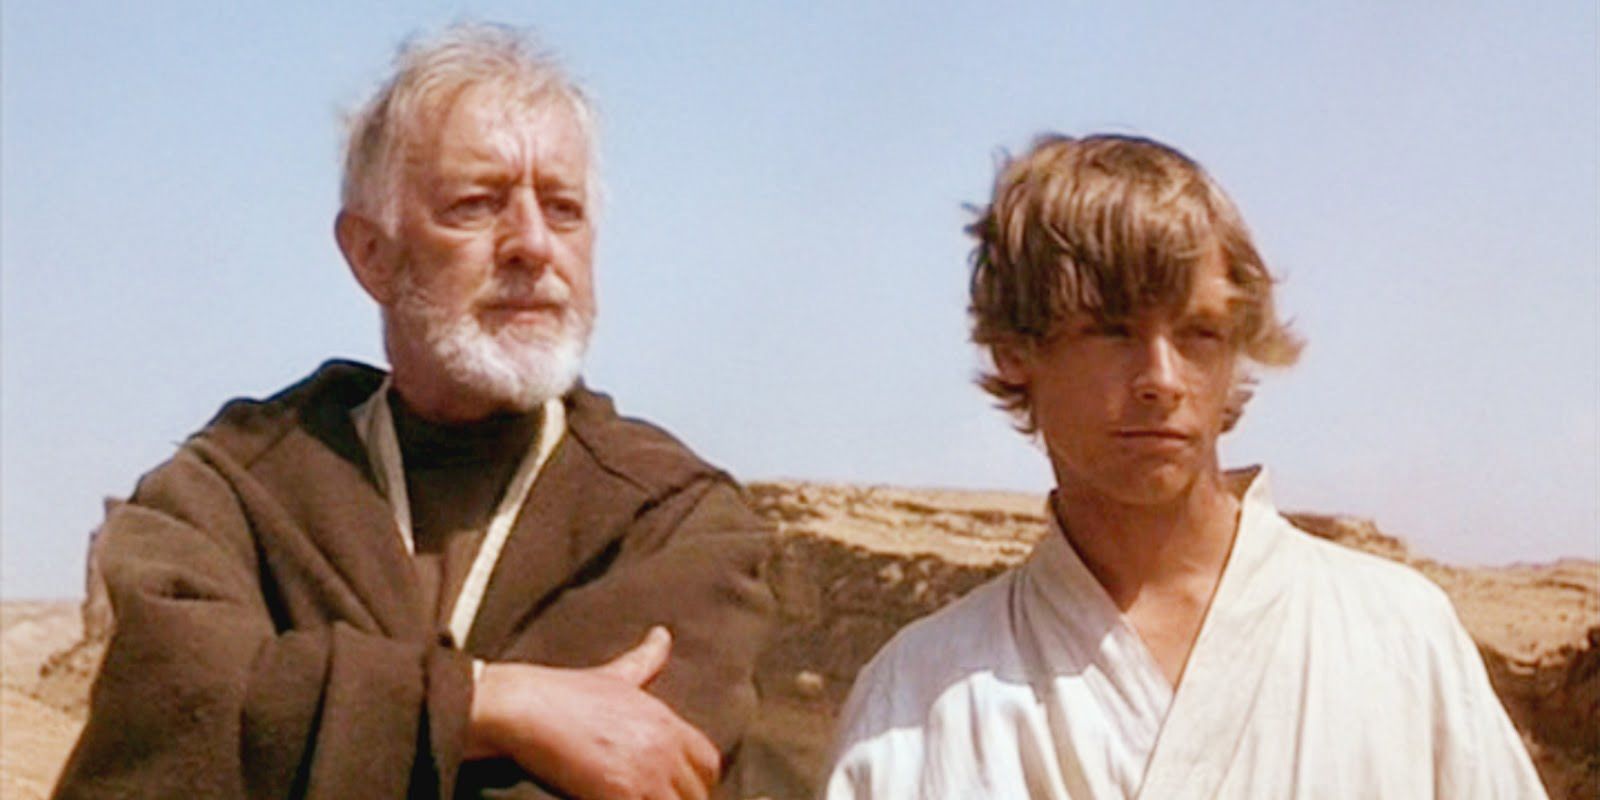 Obi-Wan and Luke